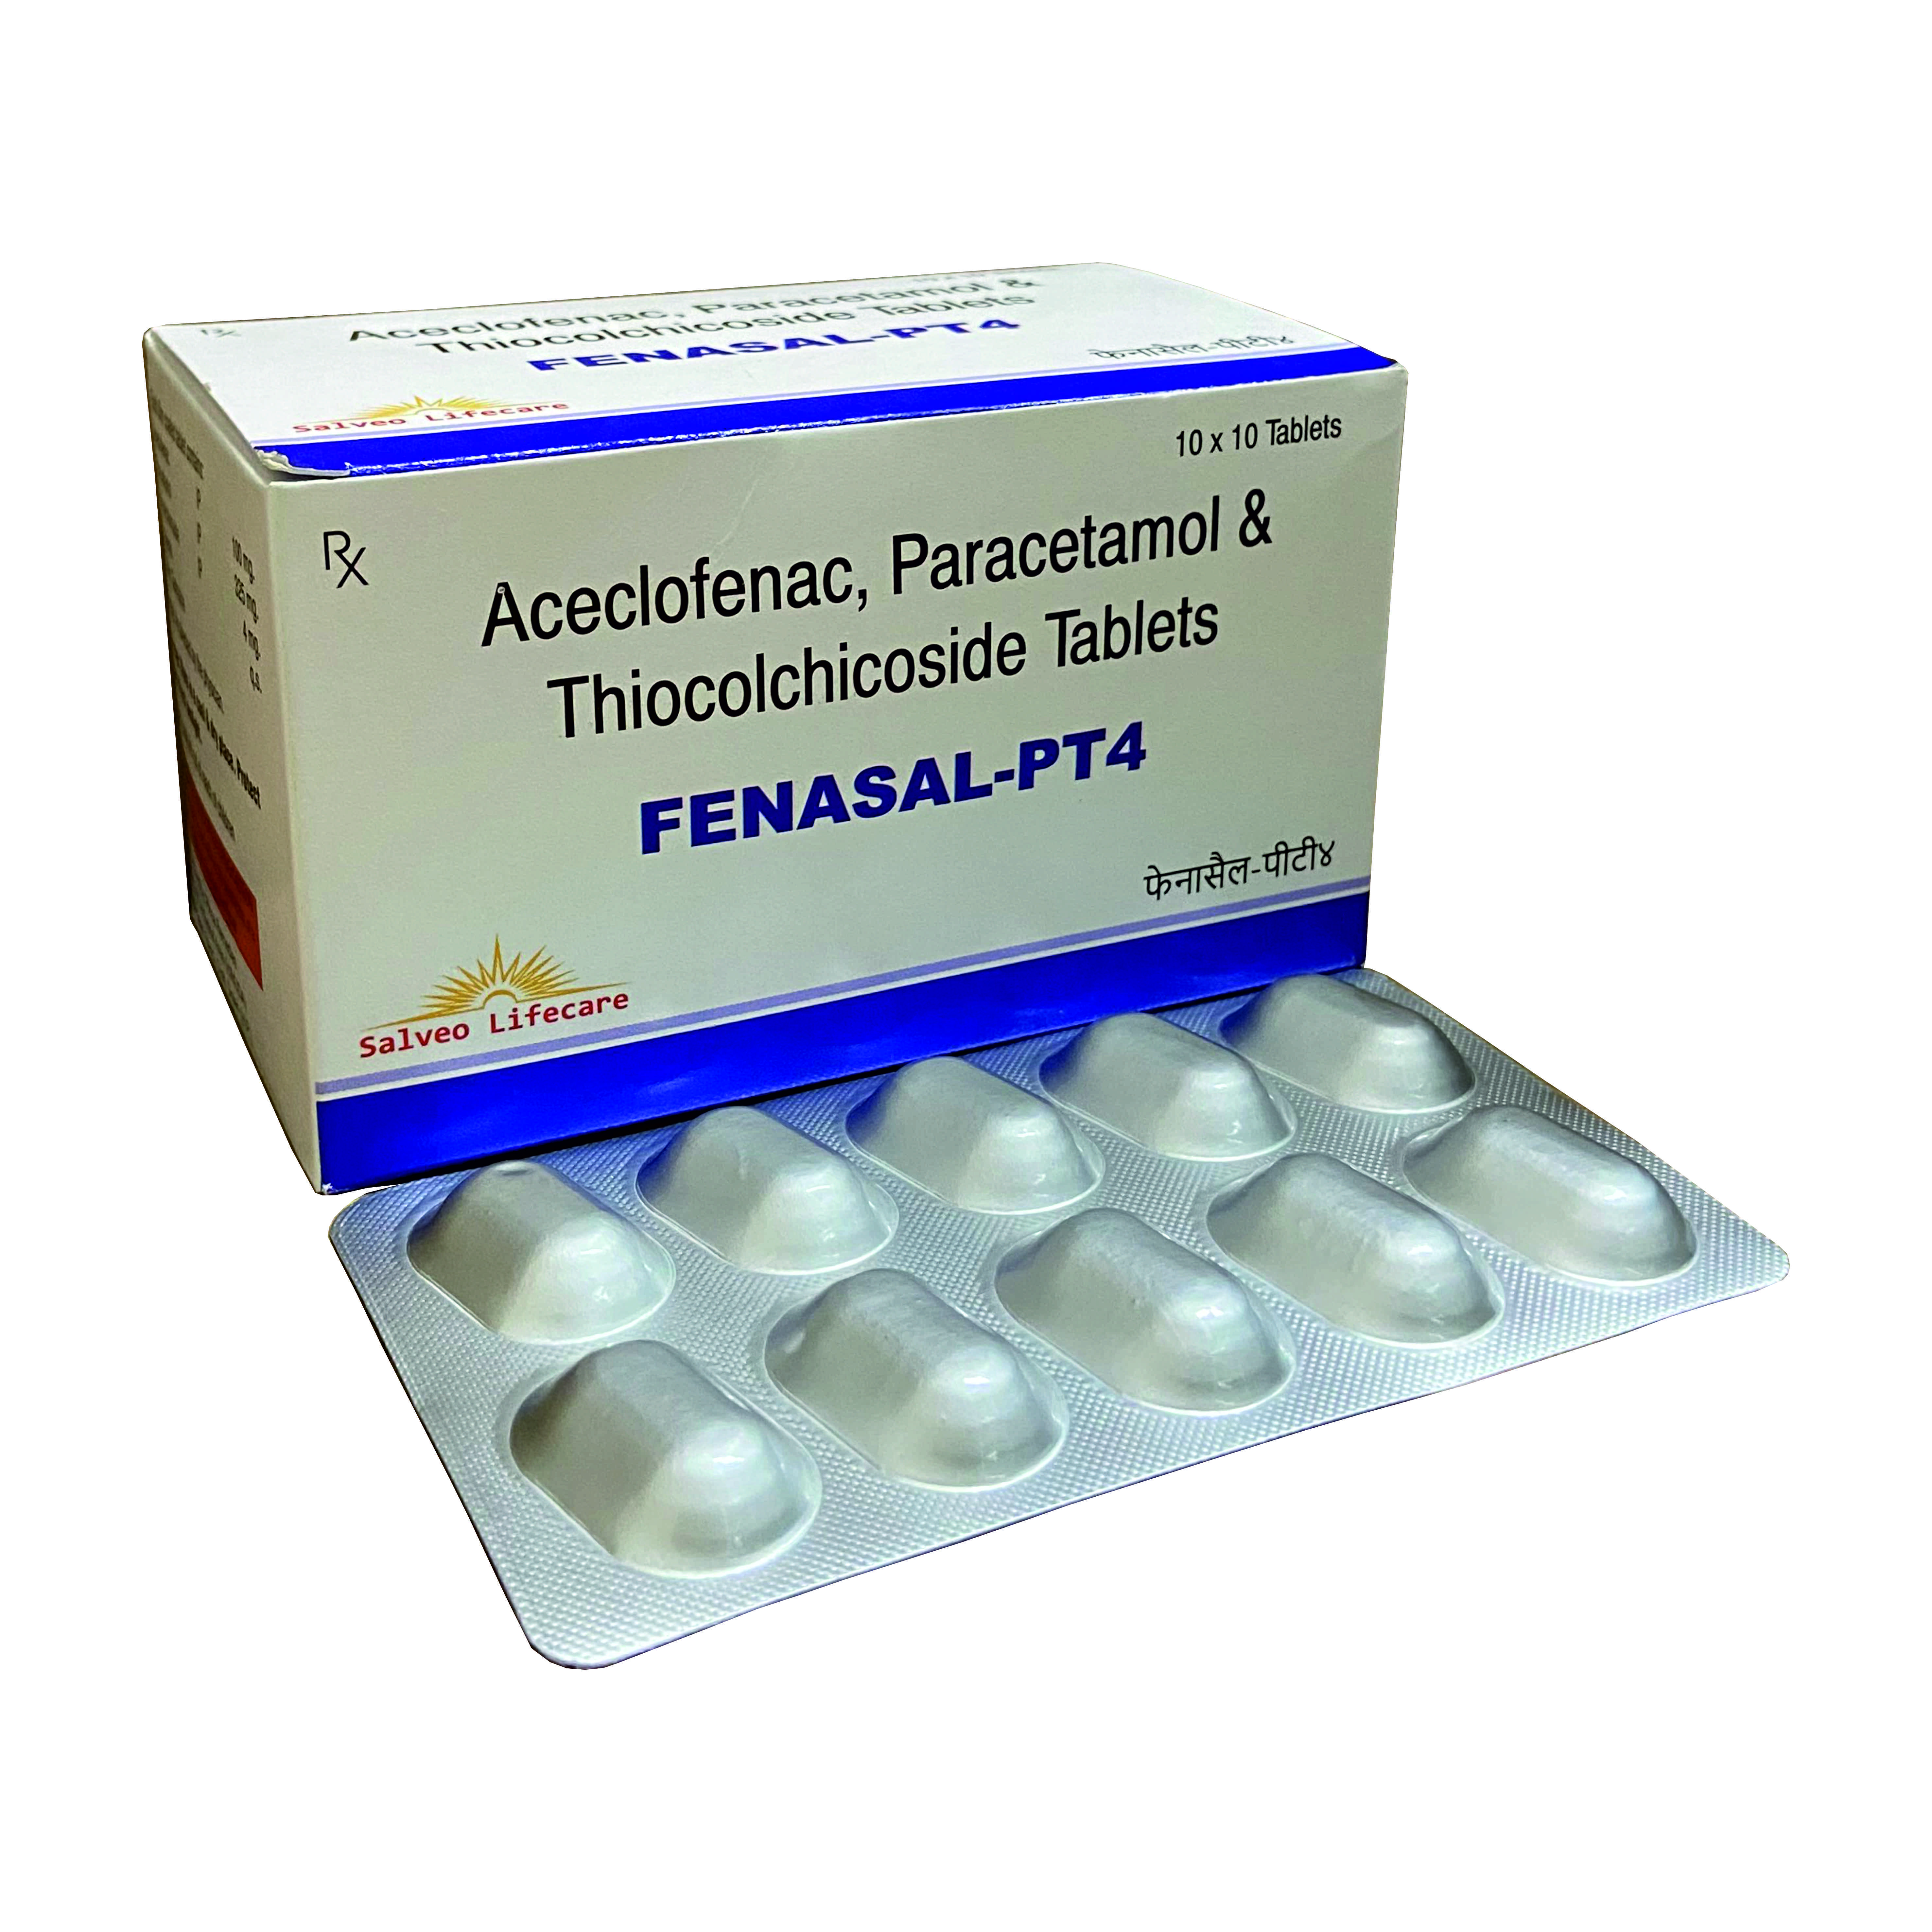 aceclofenac 100 mg, paracetamol 325 mg, thiocholchicoside 4 mg